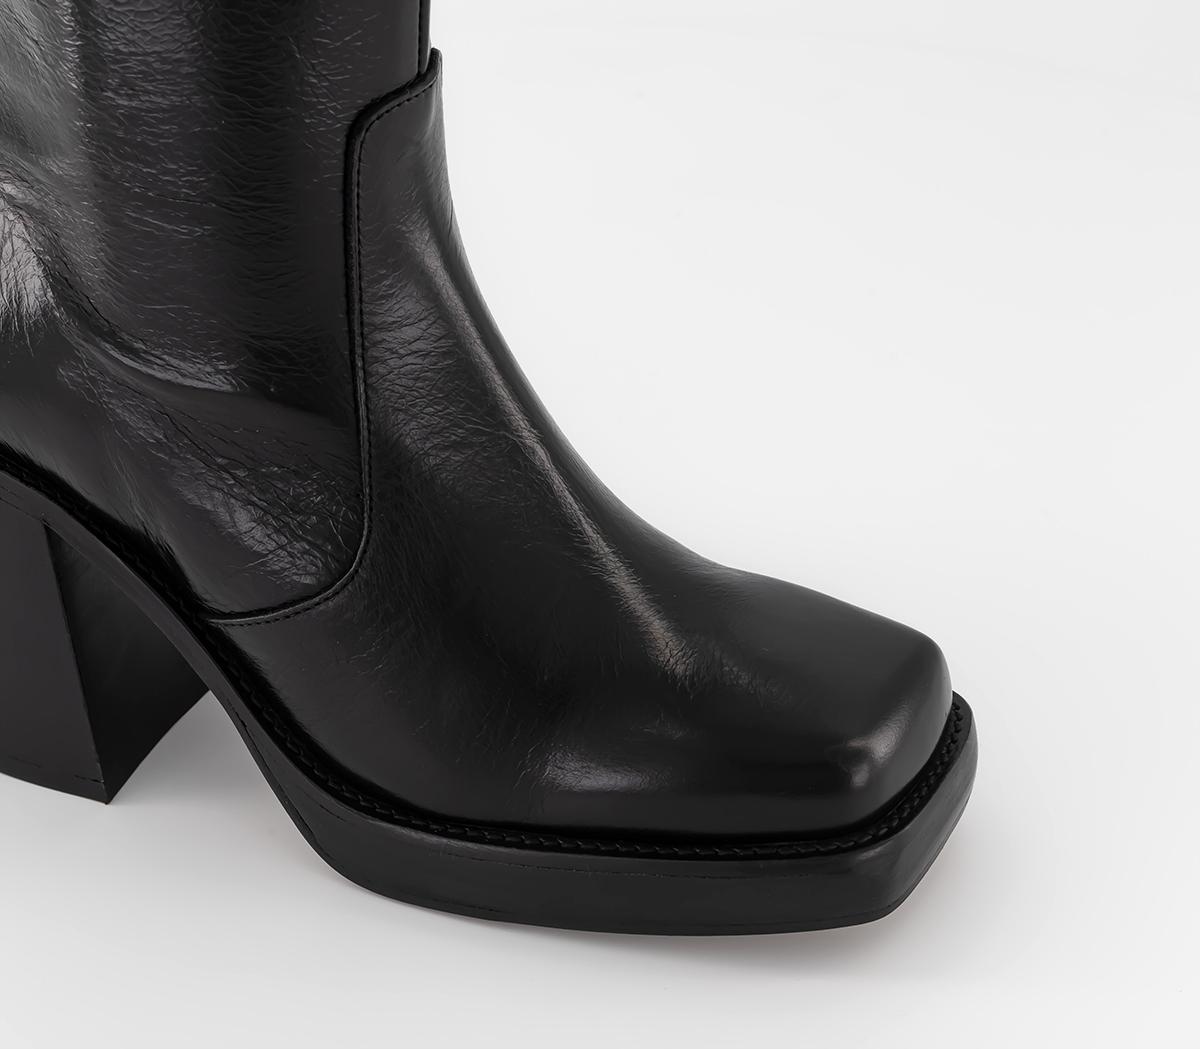 OFFICE Anthem Chunky Platform Block Ankle Boots Shiny Black Leather ...